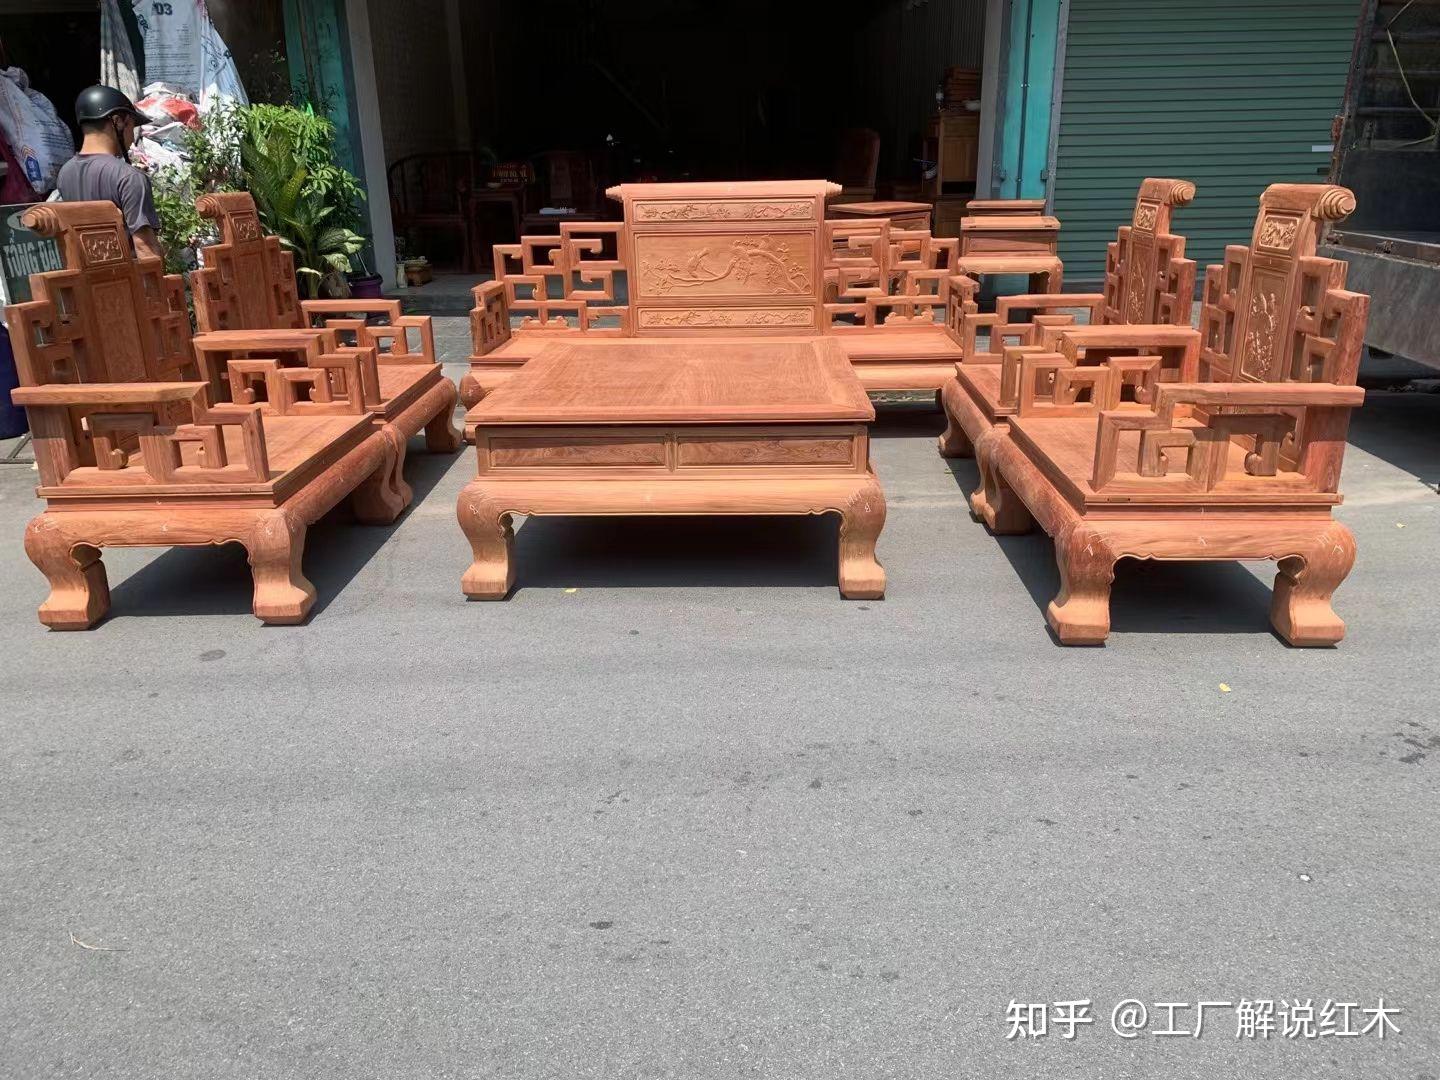 中式红木家具效果图大全2017图片 – 设计本装修效果图